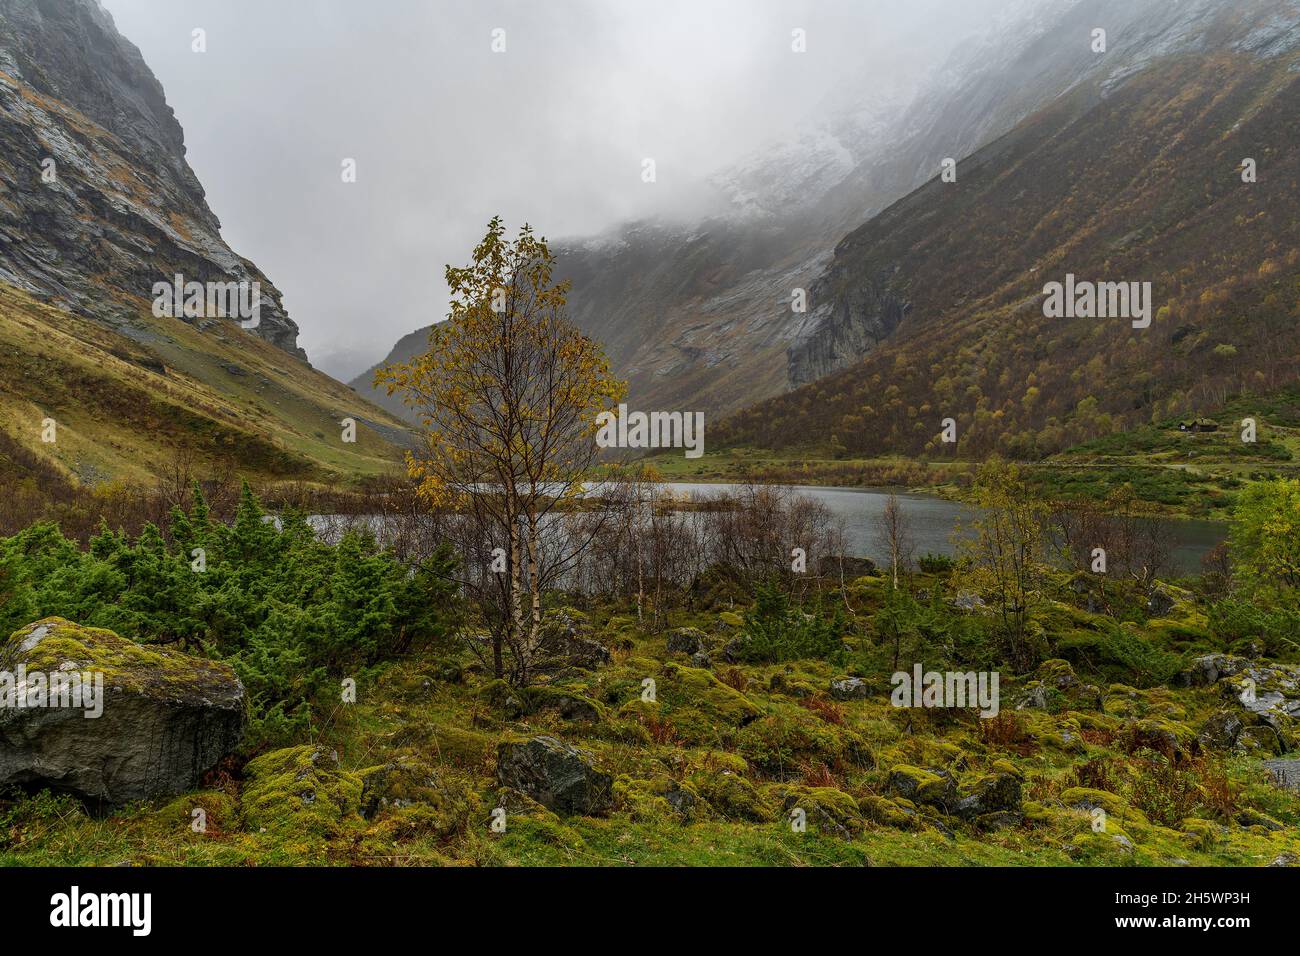 gelbe Birke im Tal von Sunnmørsalpene, mit See im engen Tal zwischen steilen Bergen. Herbst in Norwegen. Norwegisches Wetter, neblig und regnerisch. Stockfoto